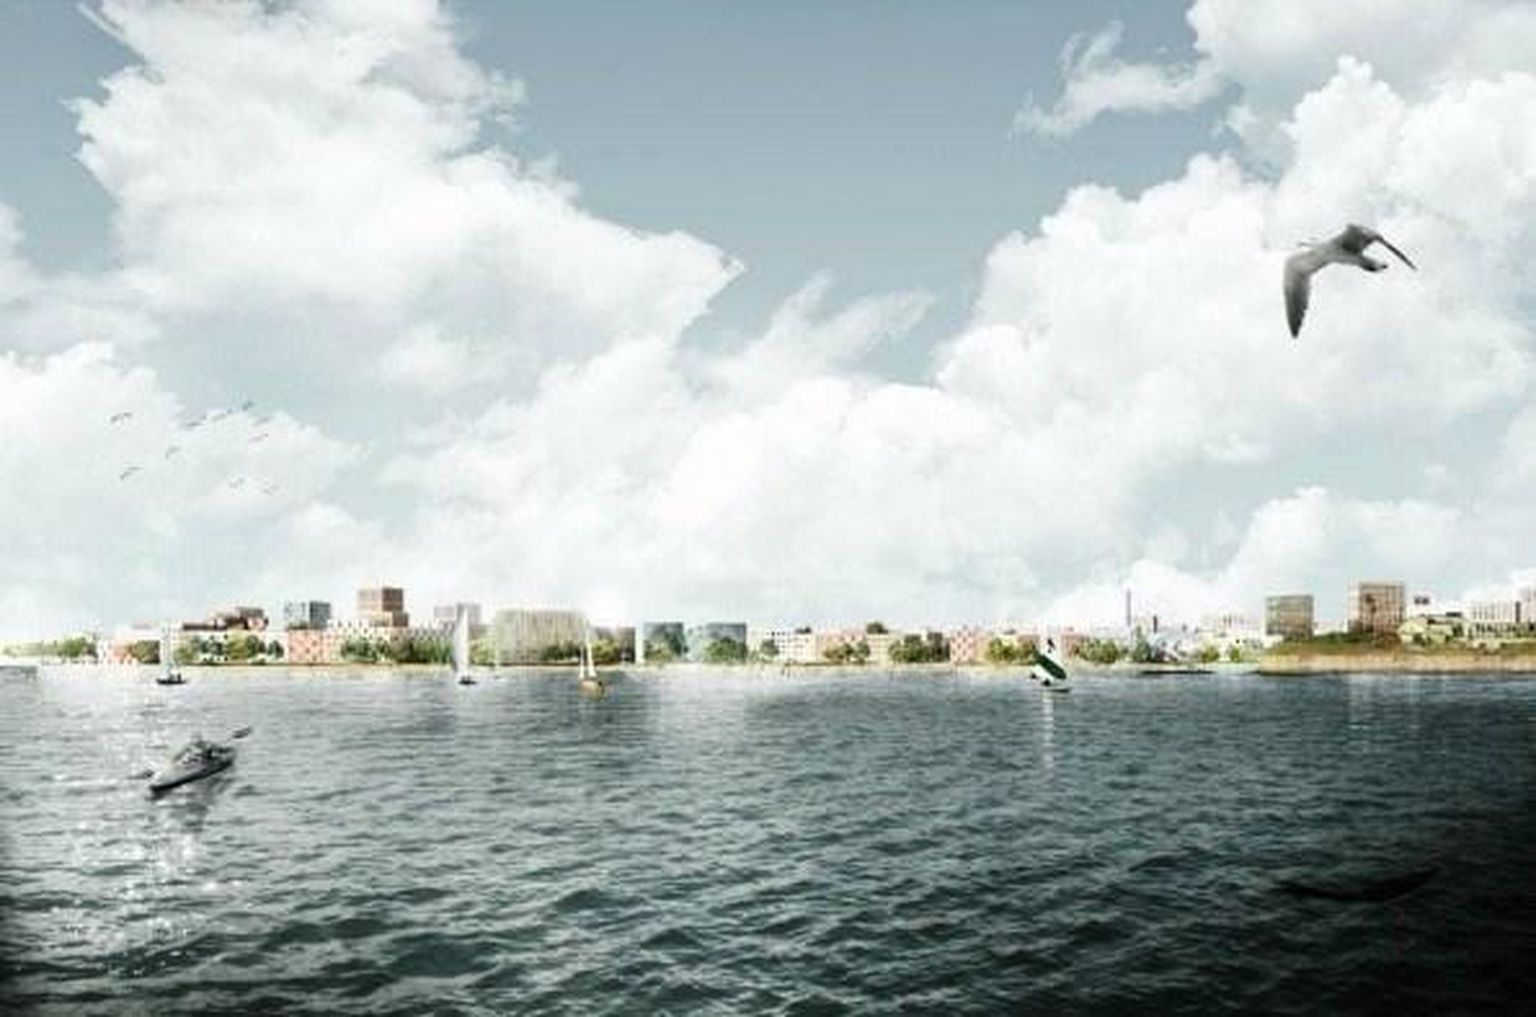 Eskiis sellest, milline vaade Lynetteholmi saarele peaks tulevikus avanema siis, kui seista Nordhavni sadamapiirkonnas Kopenhaagenis. 